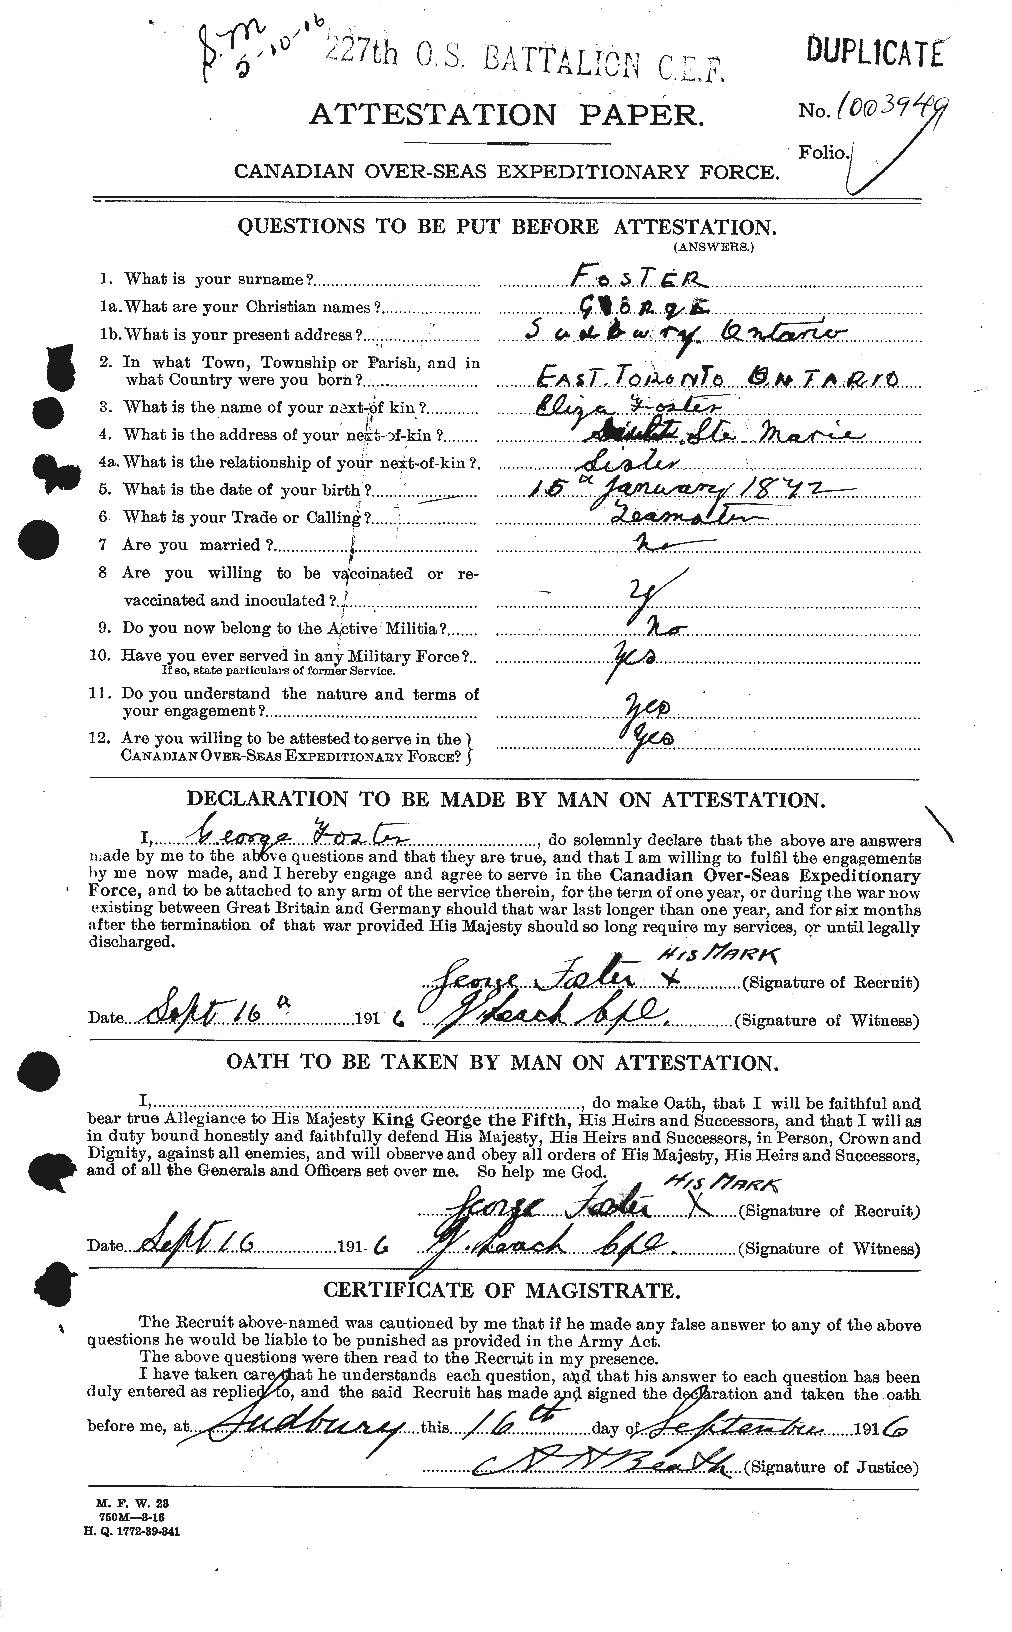 Dossiers du Personnel de la Première Guerre mondiale - CEC 330667a